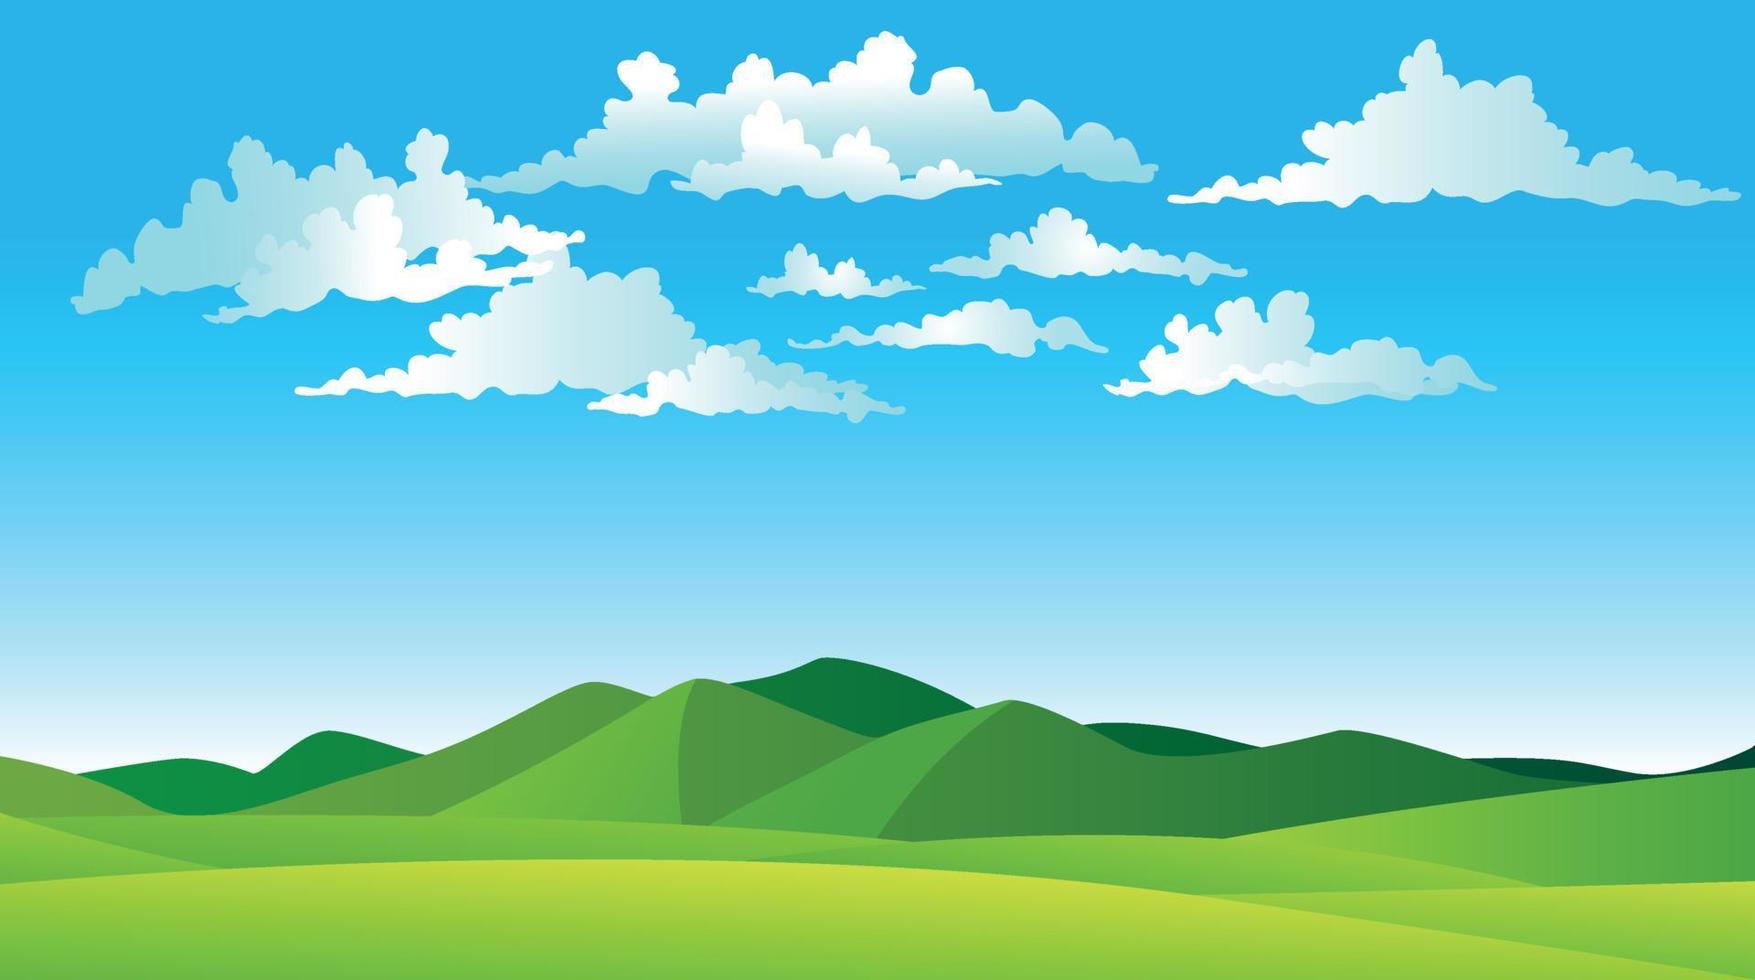 illustrazione vettoriale di bellissimi campi di paesaggio estivo, colline verdi, colore blu brillante del cielo, sfondo del paese in stile cartone animato banner piatto